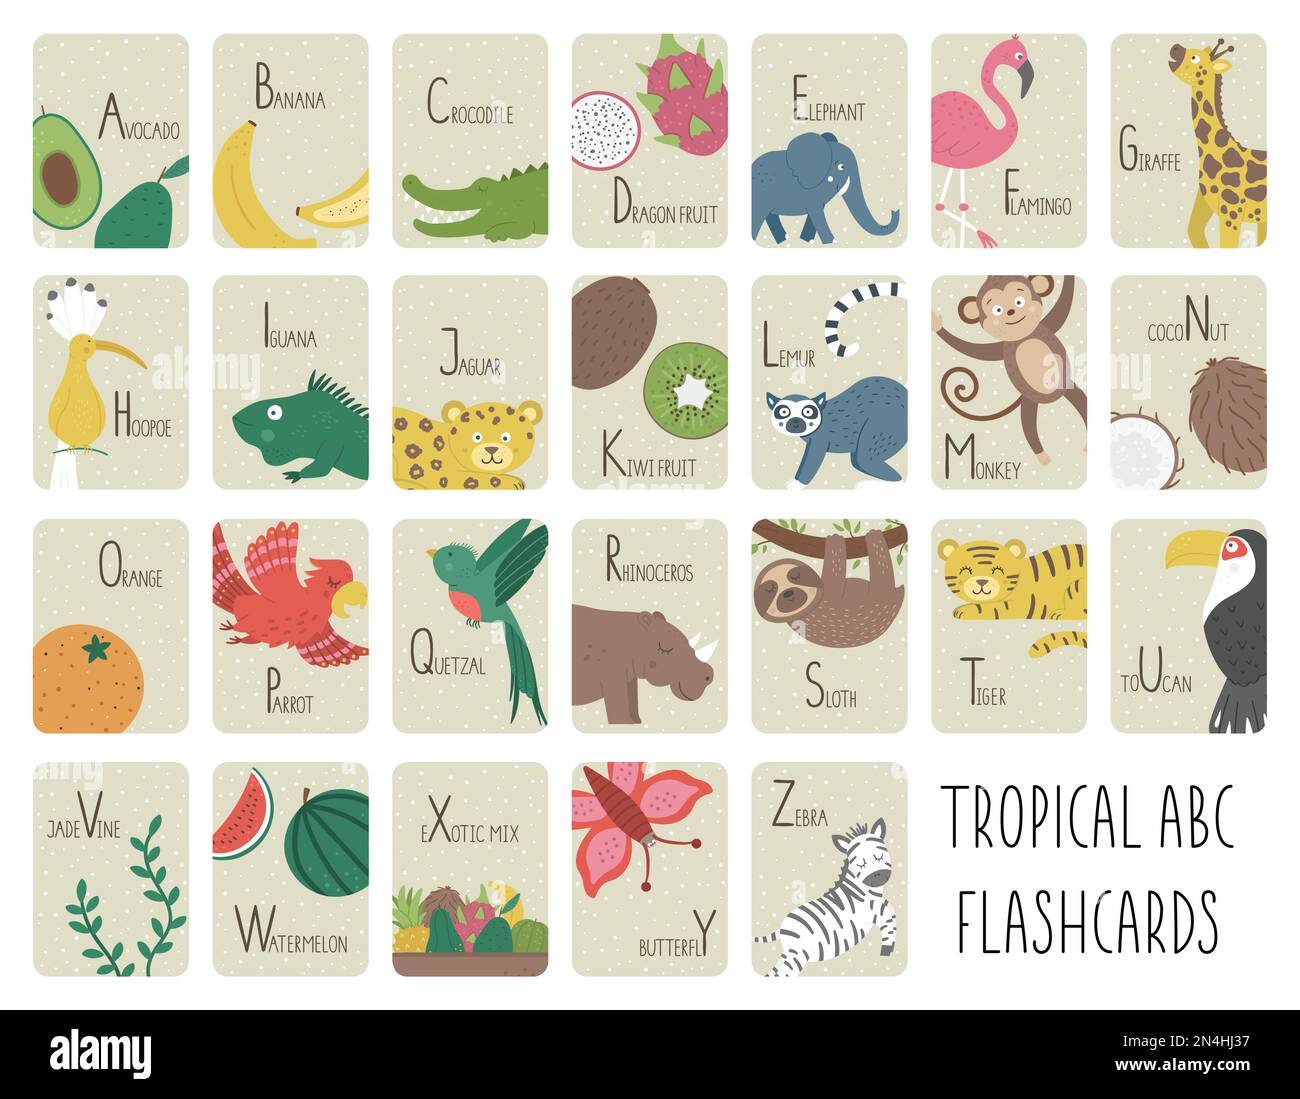 Tarjetas de alfabeto tropical para niños. Lindo ABC de dibujos animados con animales exóticos, pájaros, frutas, insectos. Divertidas tarjetas de la selva para enseñar la lectura o Ilustración del Vector